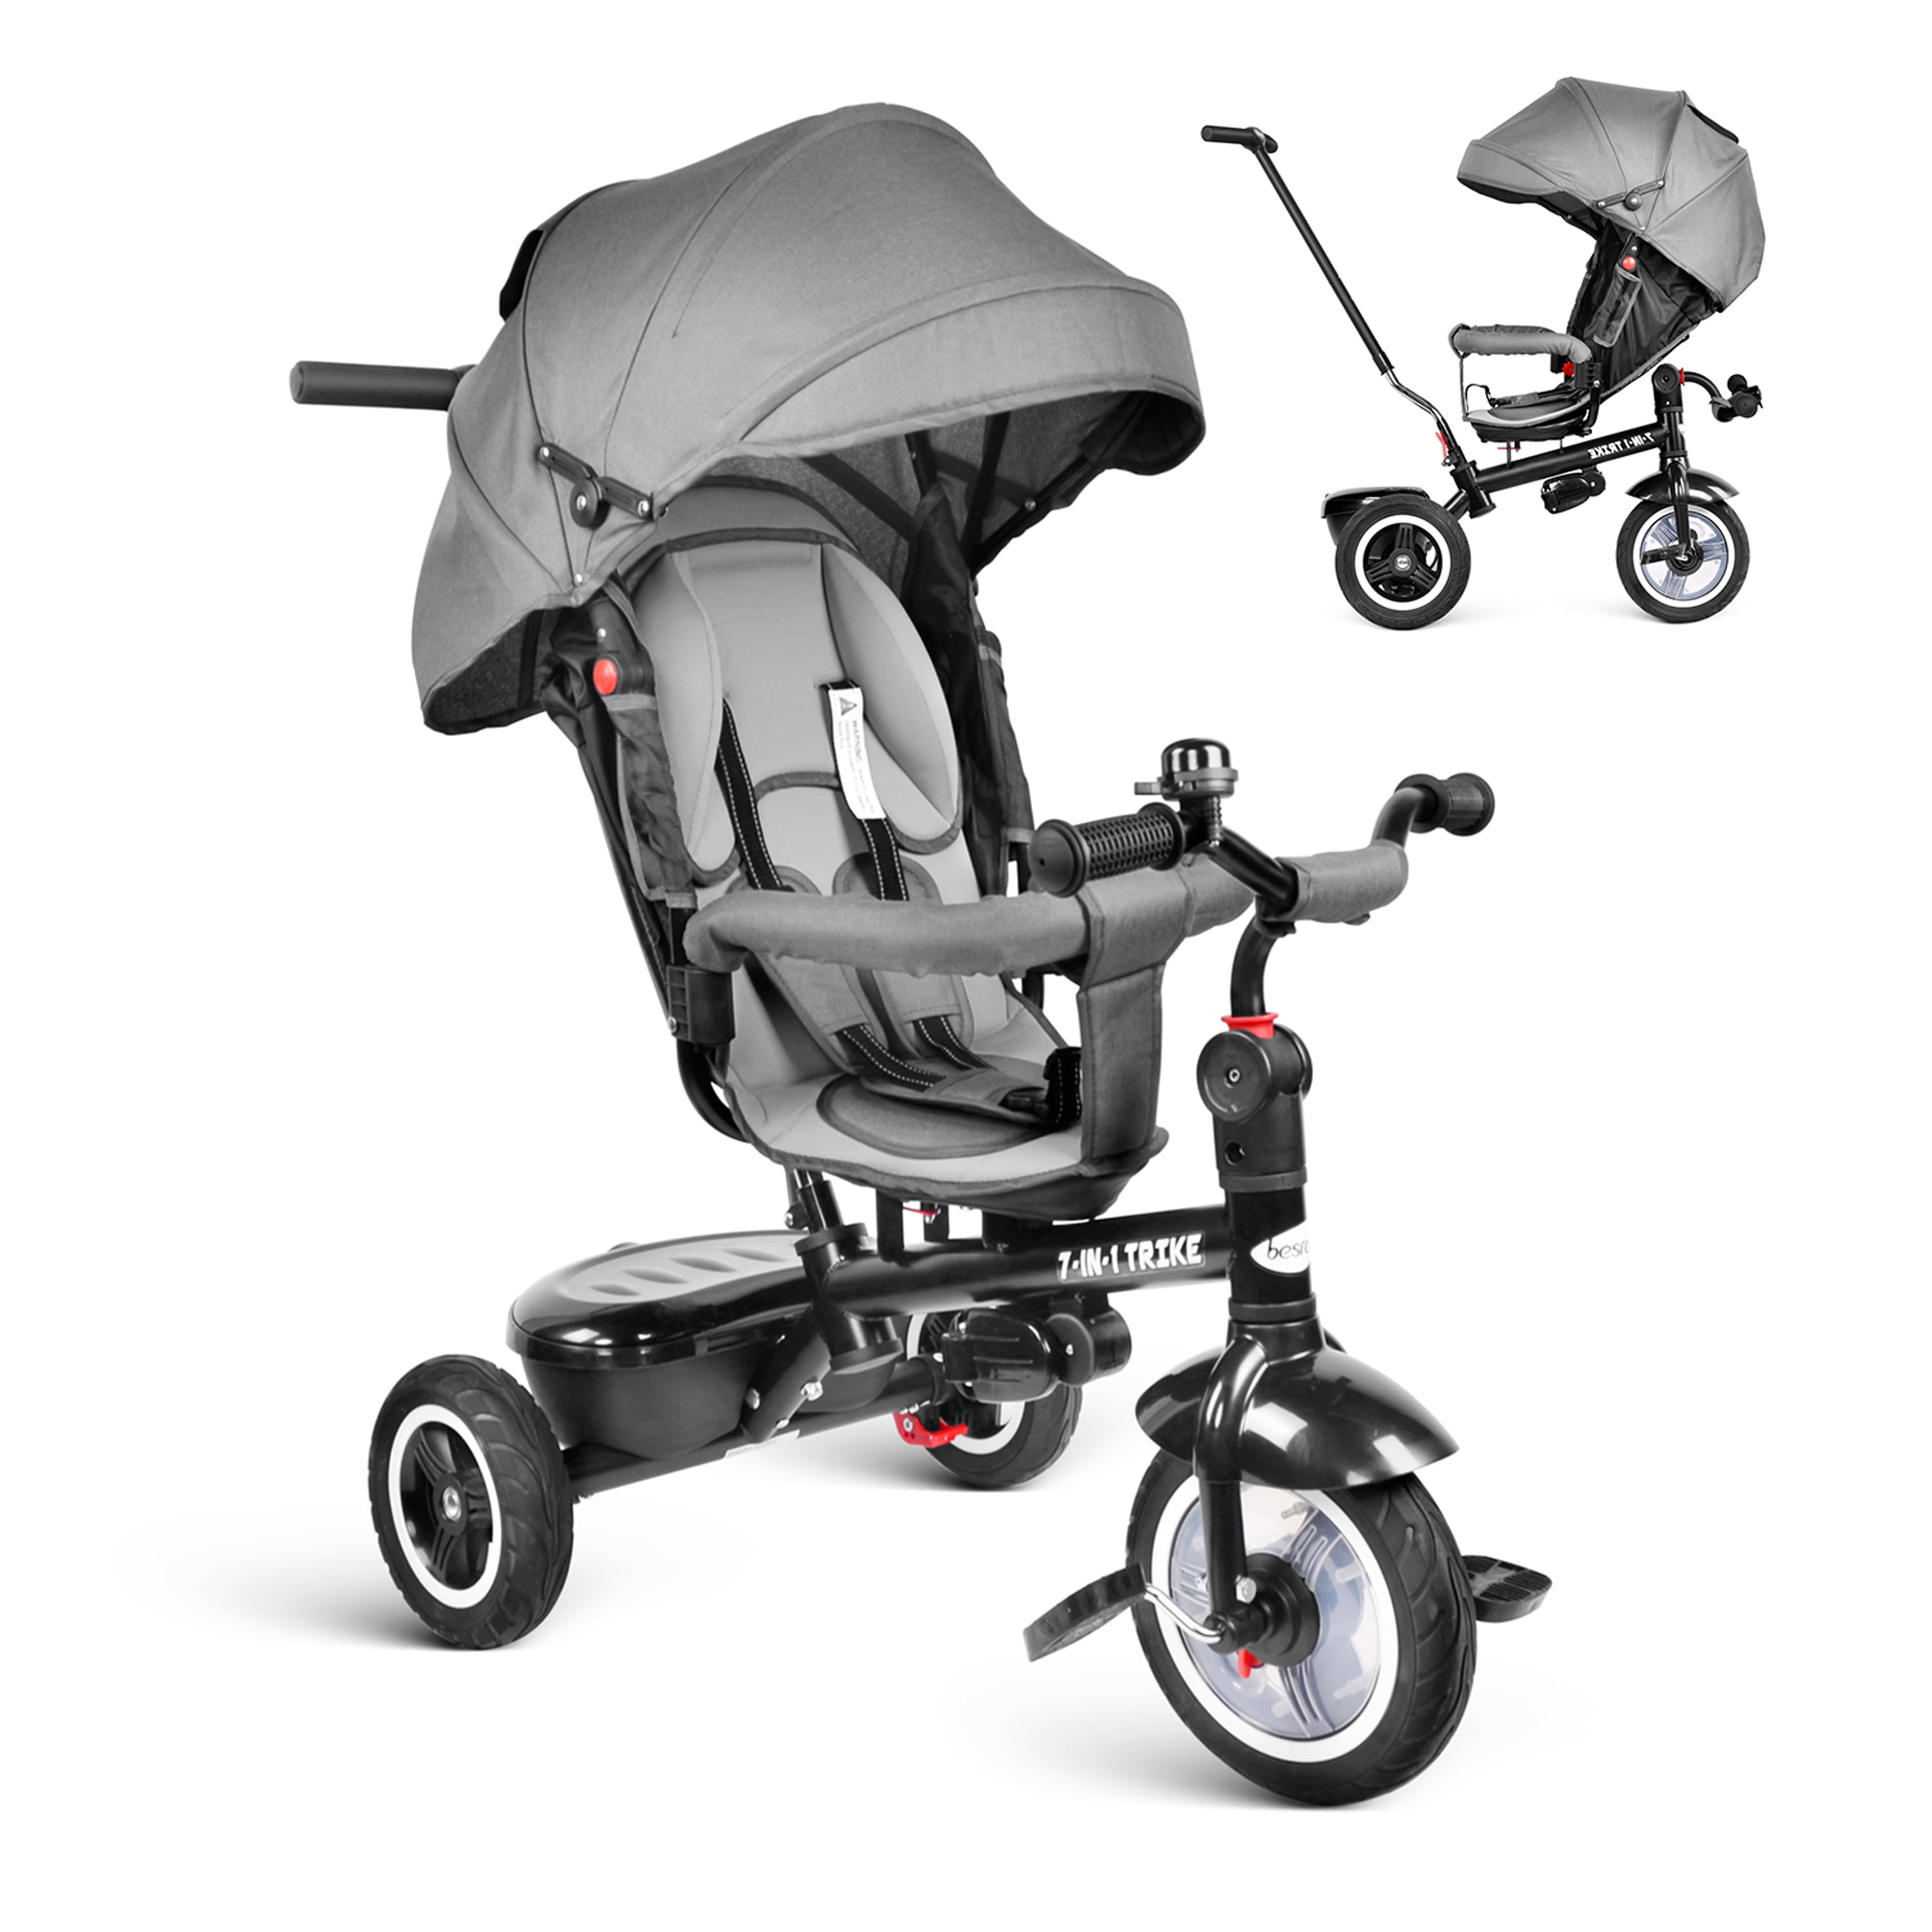 besrey Kid Trike 7 in 1 Baby Tricycle Stroller Toddler